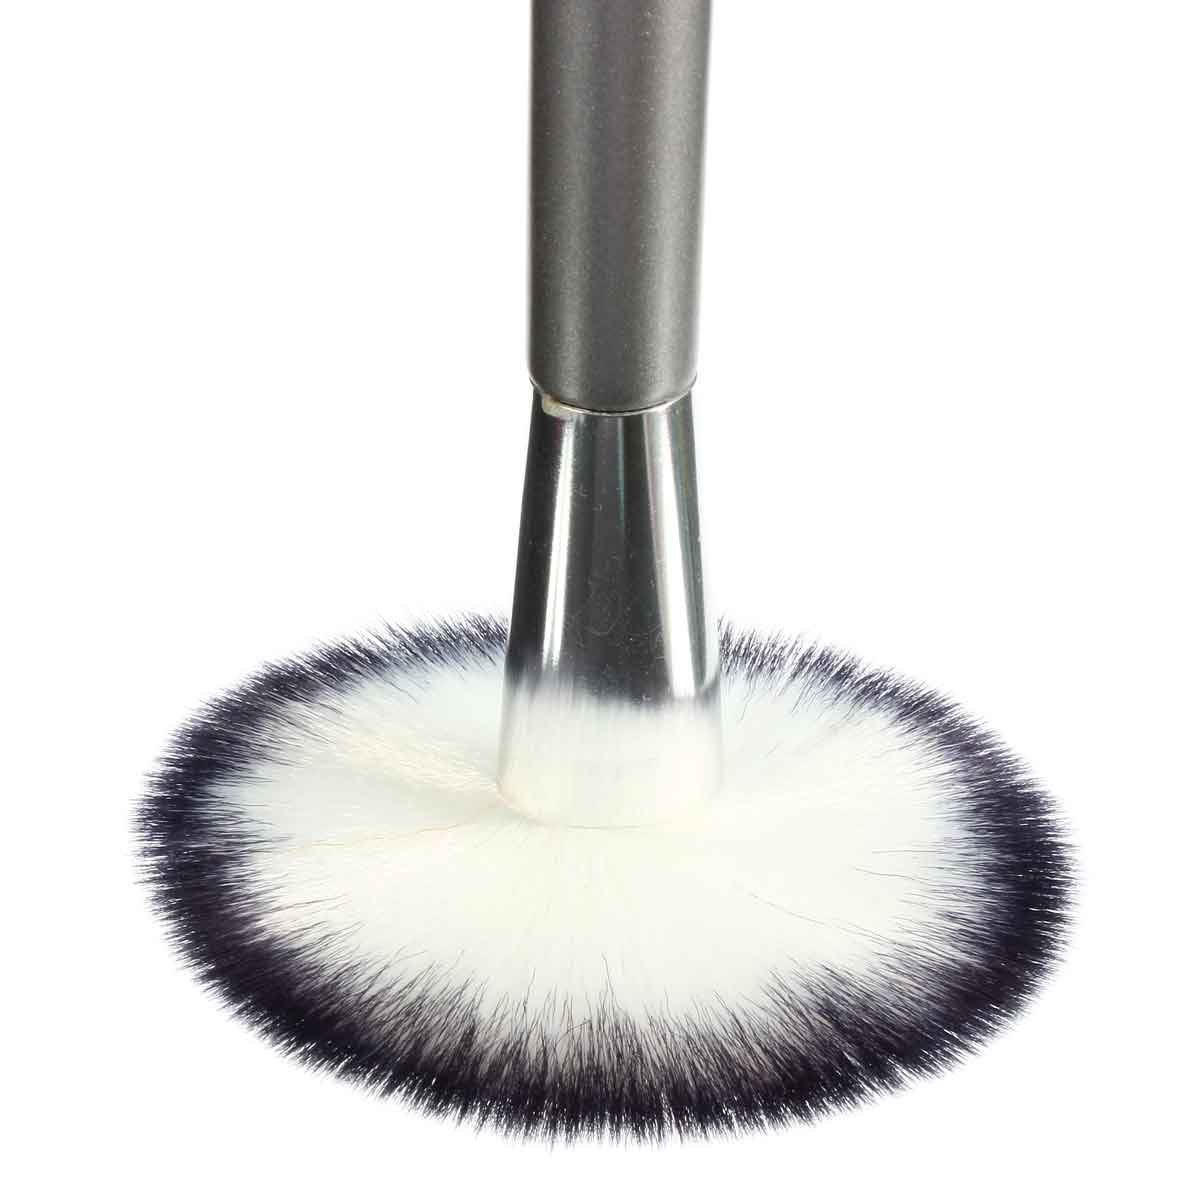 1pc Makeup Brush Cosmetic Tool Blush Powder Loose Powder 